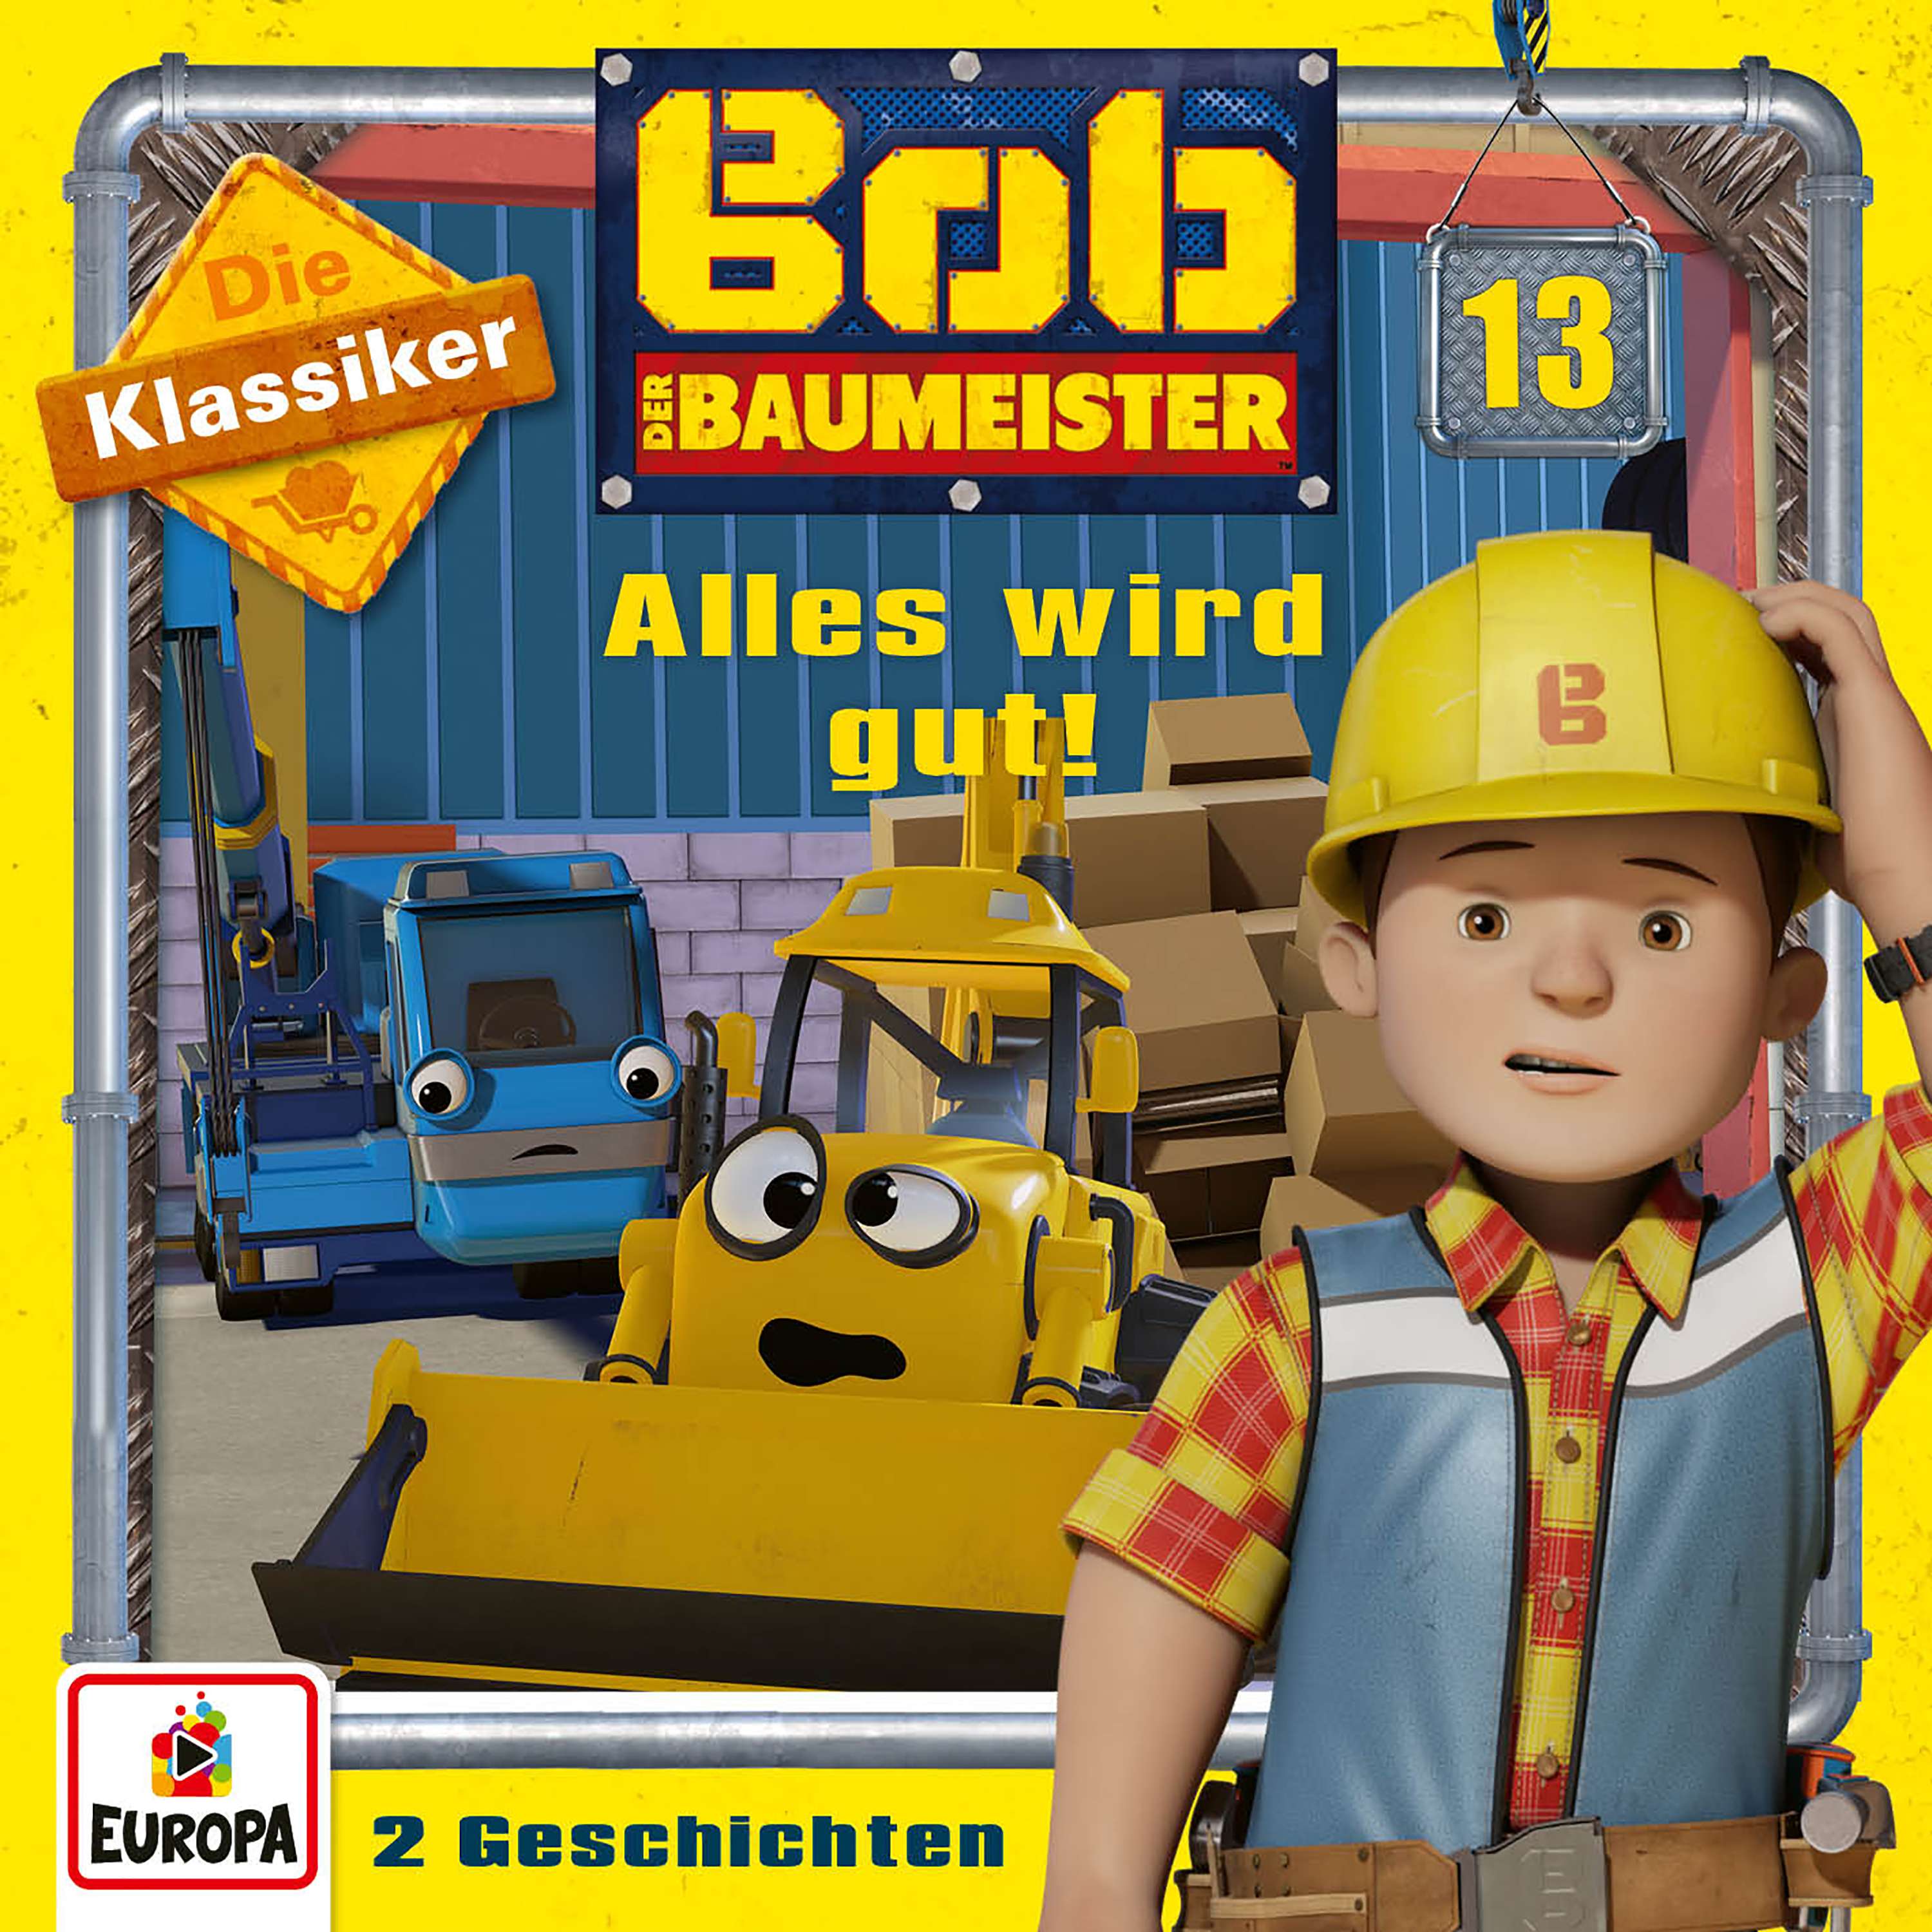 Bob der Baumeister: Alles wird gut! (Die Klassiker)